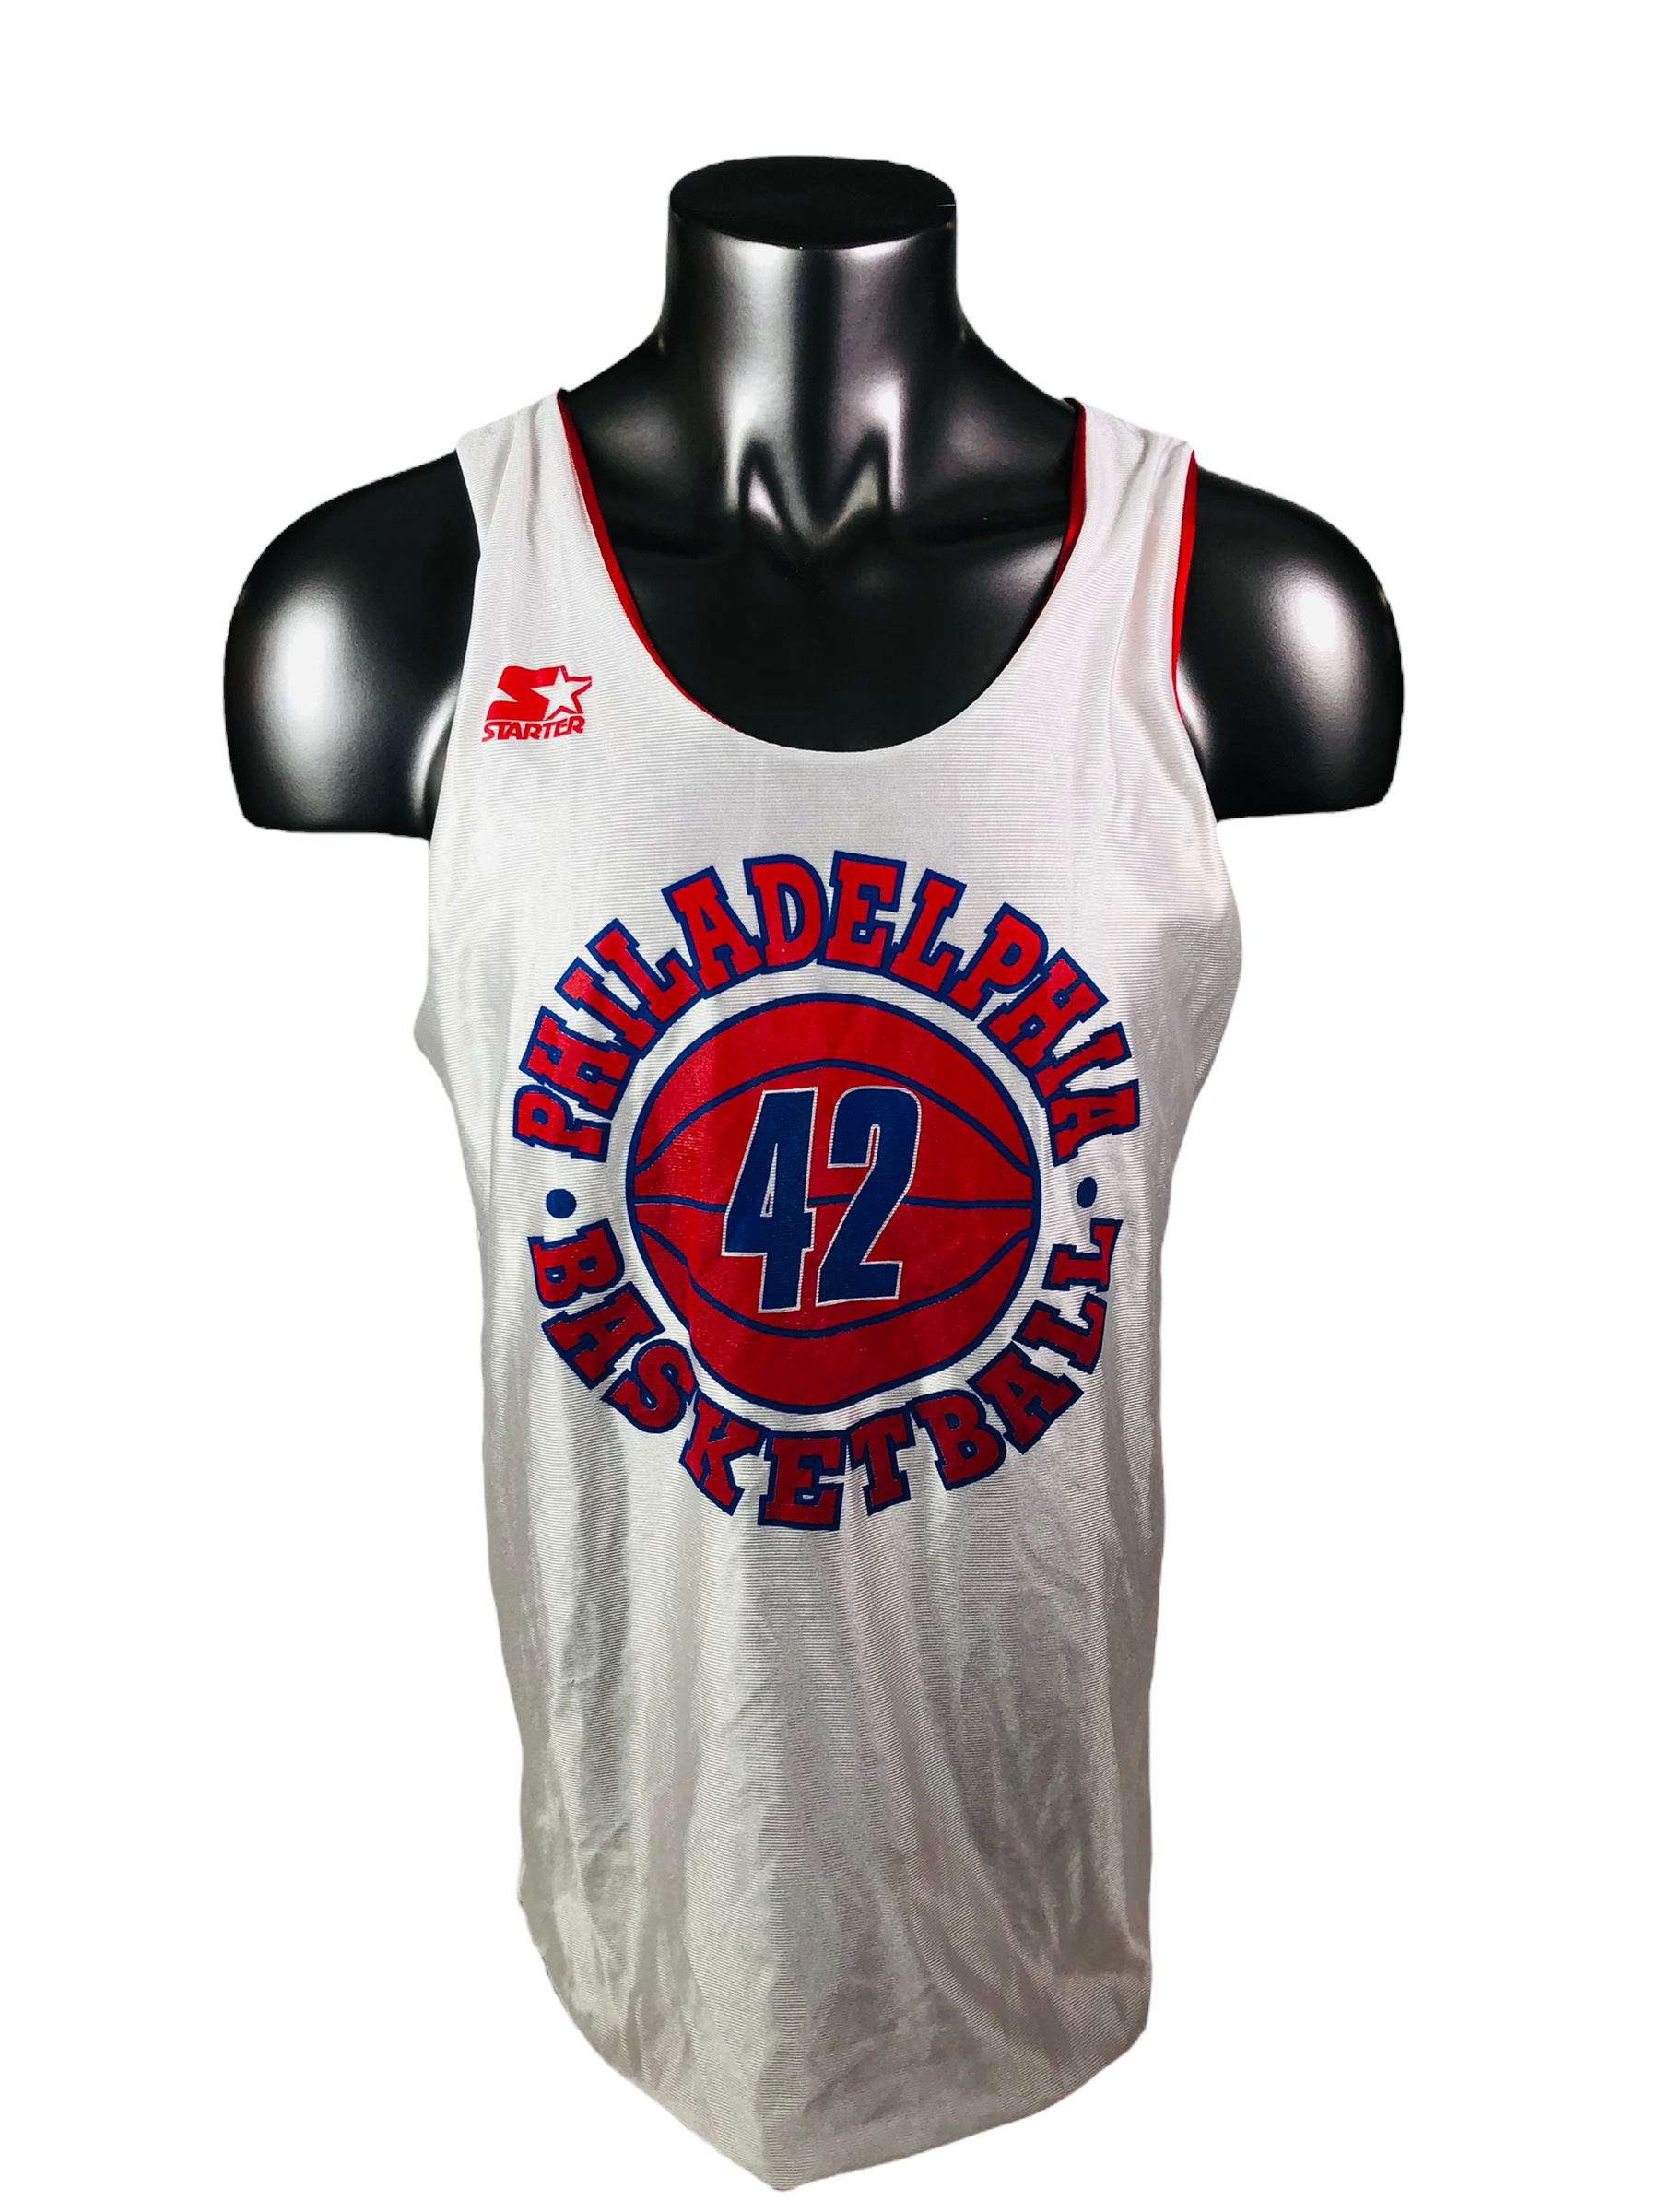 Chicago Bulls Vintage 90s Starter Reversible Basketball Jersey 